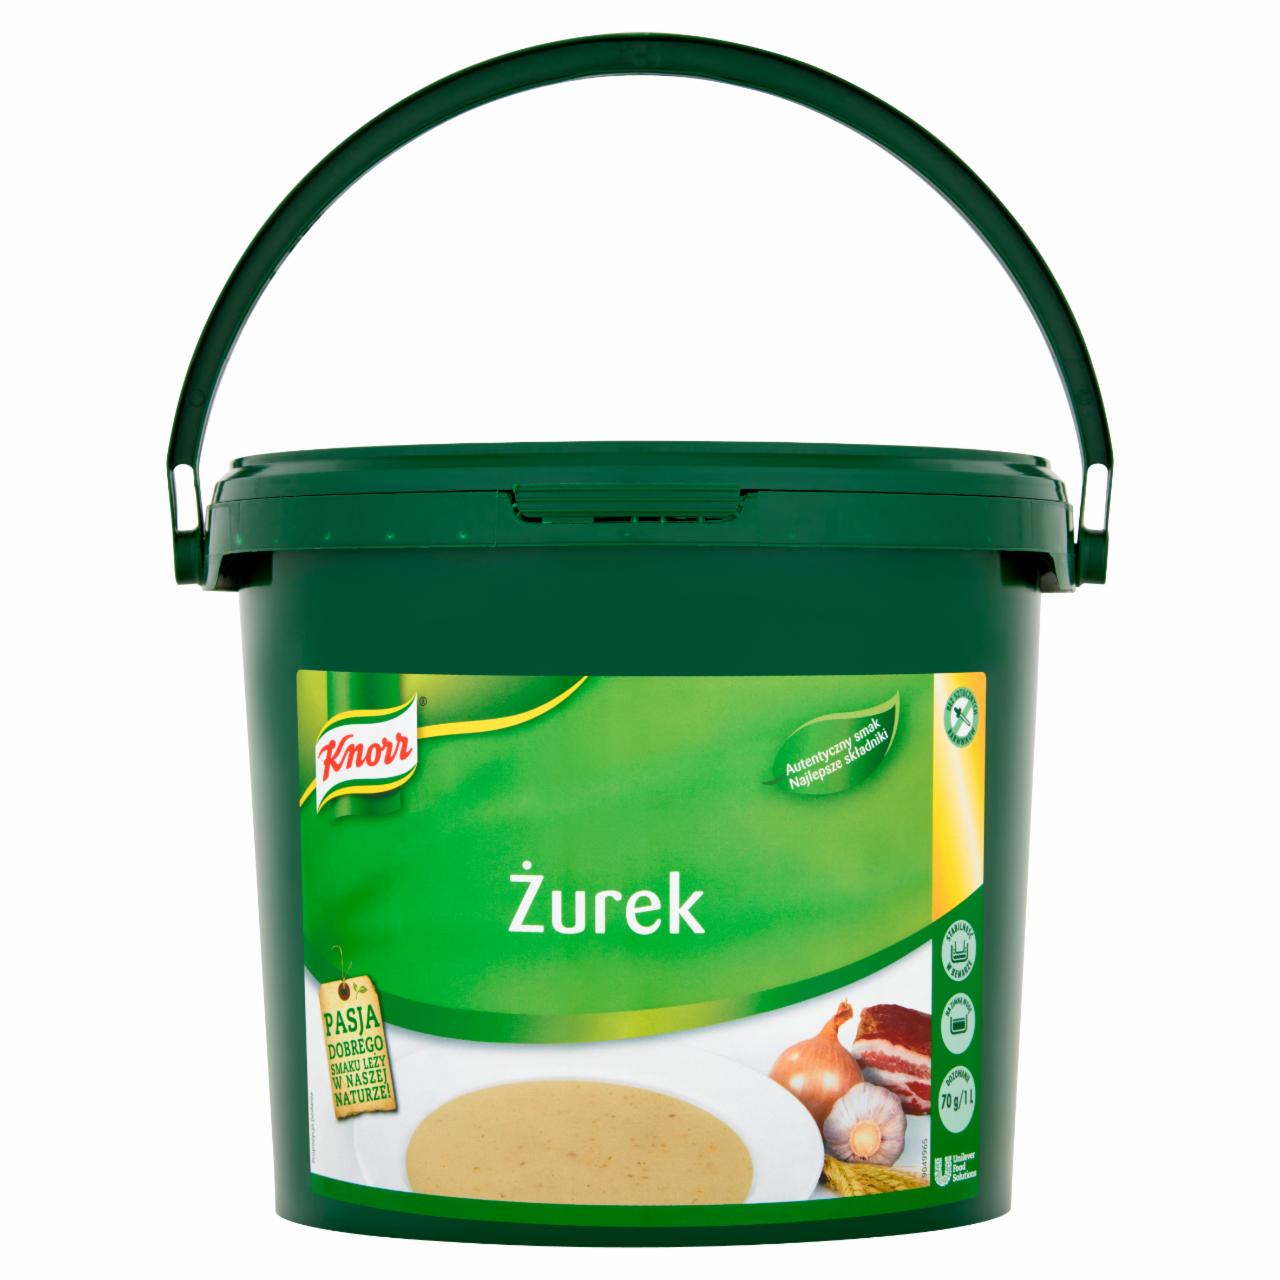 Zdjęcia - Knorr Żurek 3 kg